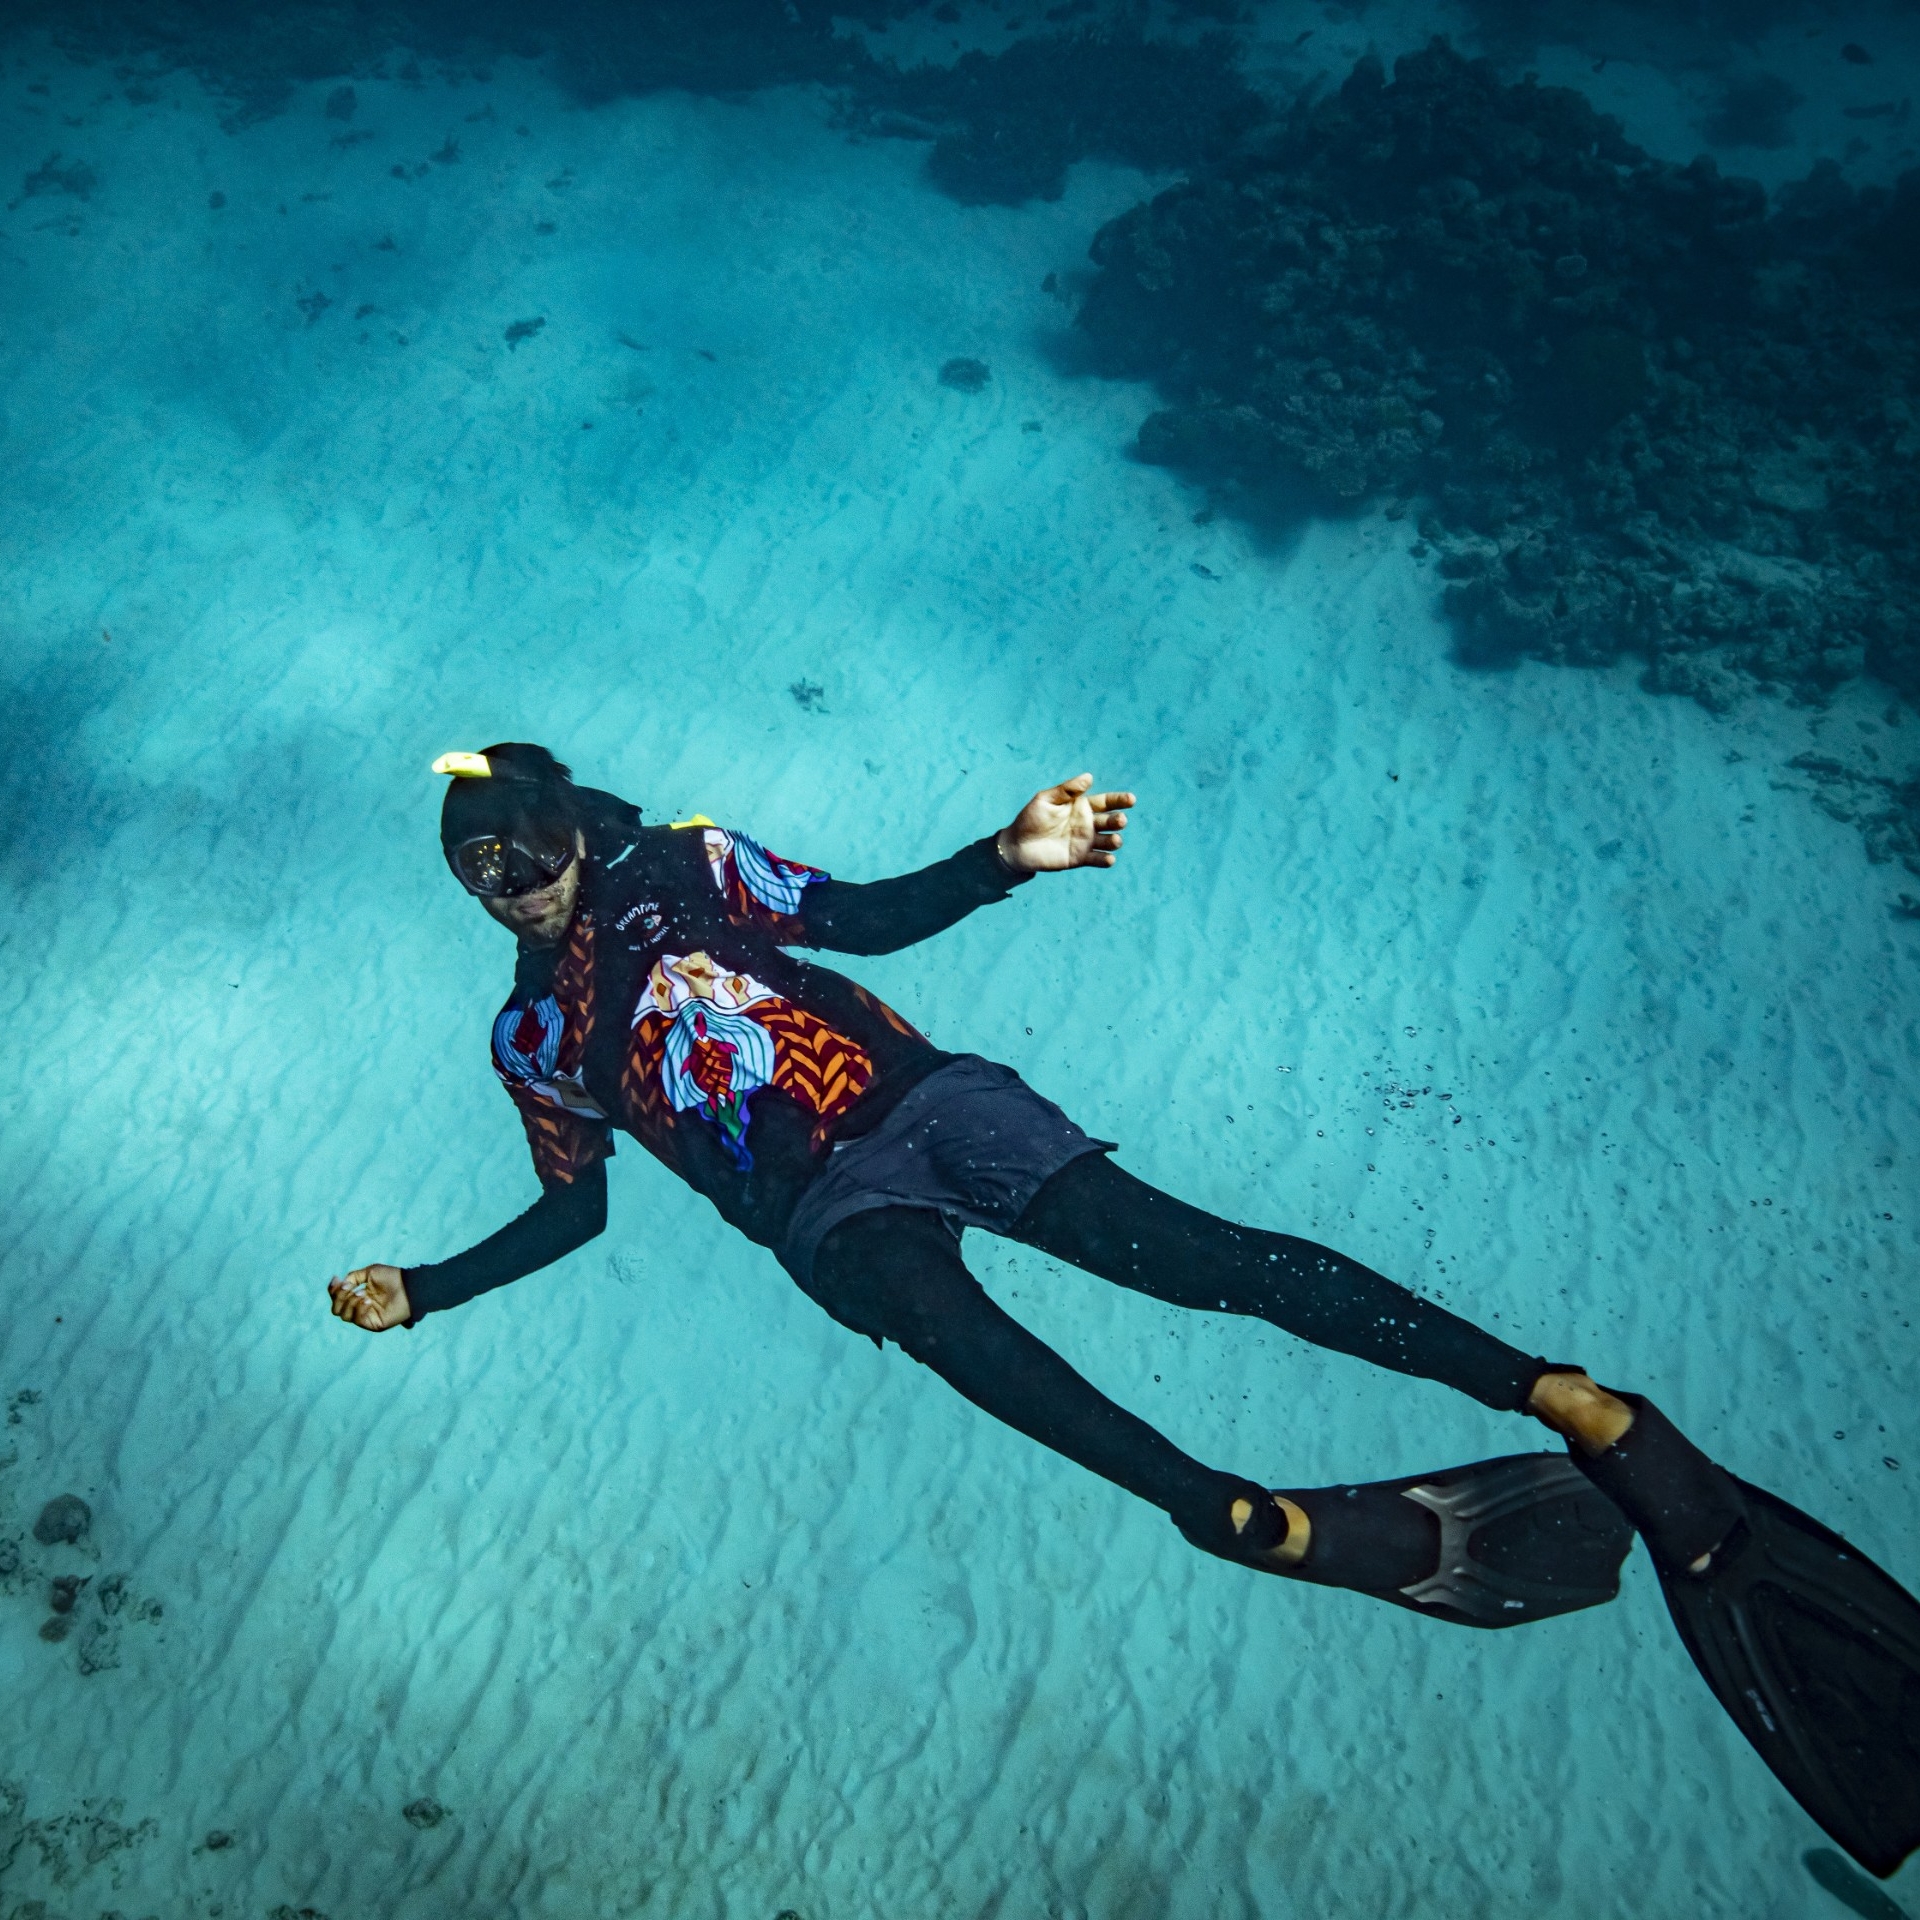 佩戴着浮潜装备和脚蹼的梦幻时光潜水和浮潜之旅向导在大堡礁游泳 © Archie Sartracom/澳大利亚旅游局版权所有